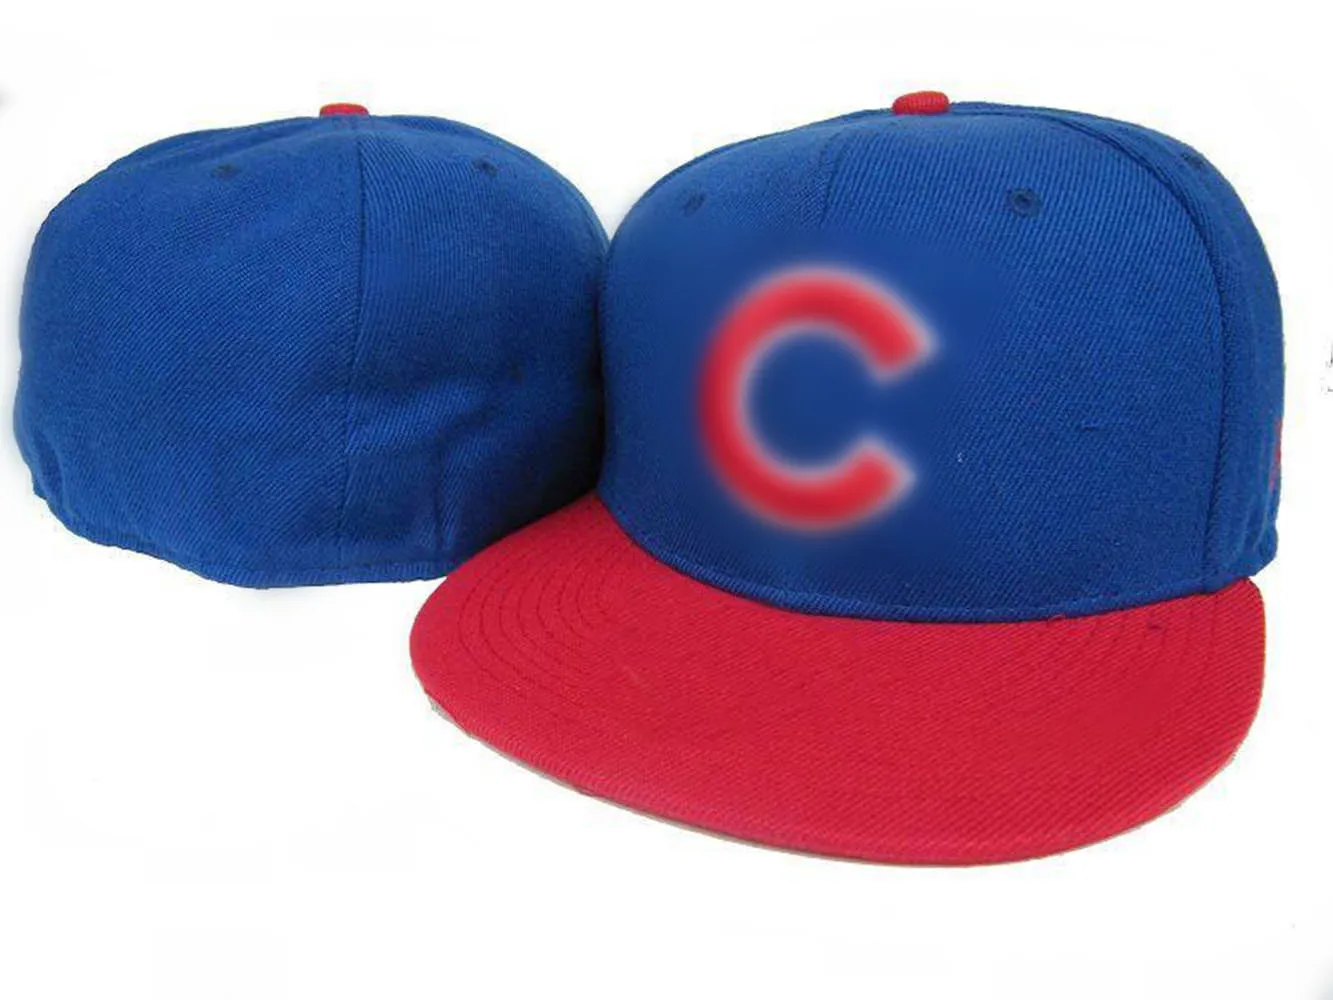 Neues Design Cubs C-Buchstaben-Baseballmützen Marke neueste Männer Frauen Gorras Hip Hop Casquette Flat Fitted Hats H9-7.13